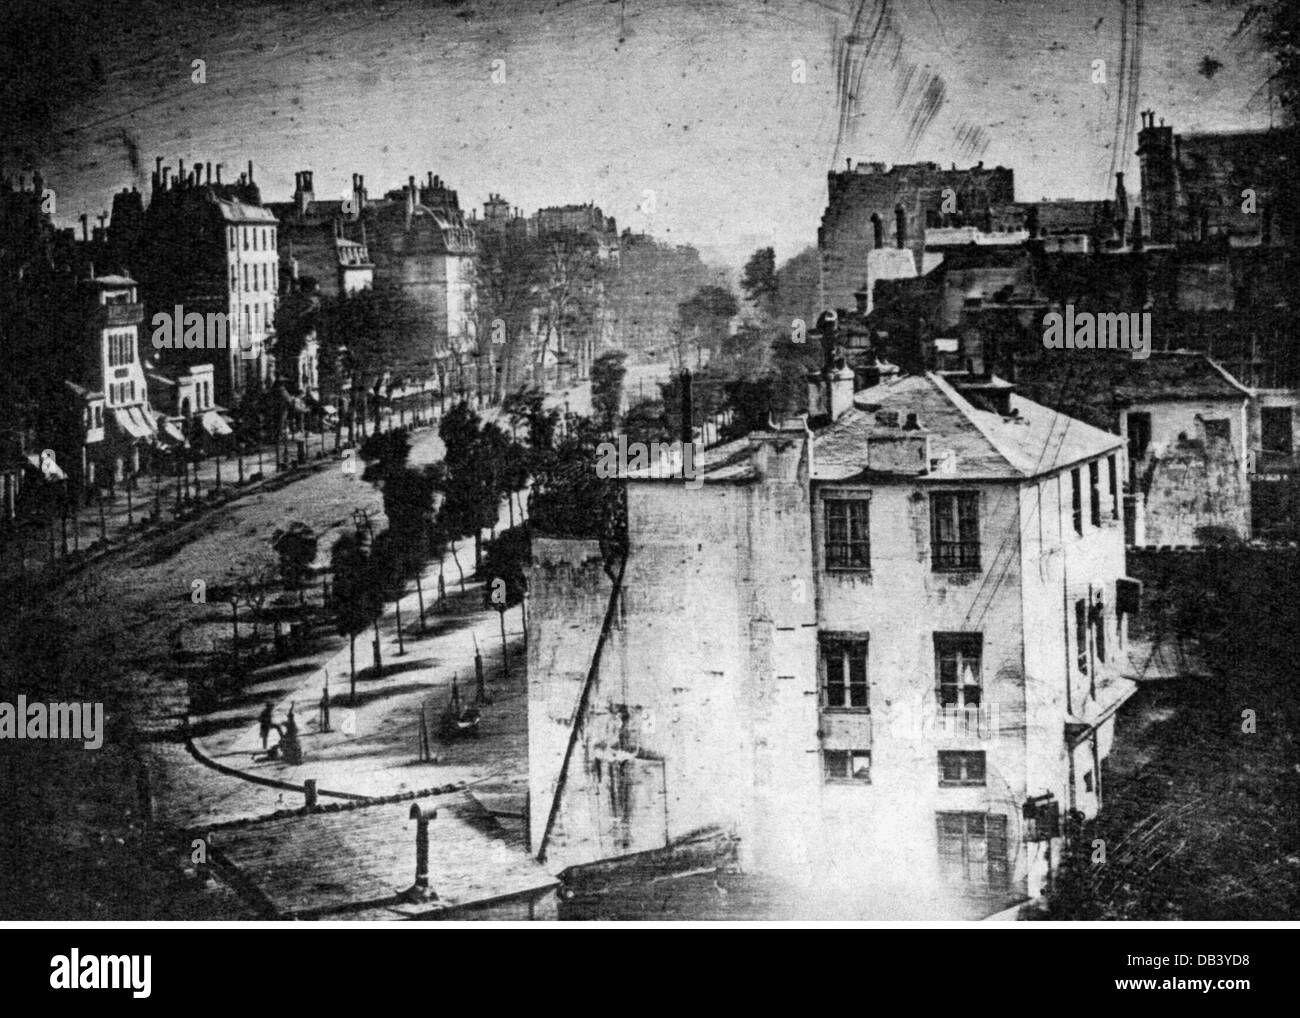 Niepce, Joseph Nicephore, 7.3.1765 - 5.7.1833, französischer Fotograf, Miterfinder der Fotografie, Blick auf eine Stadt, im Jahre 188, Stockfoto